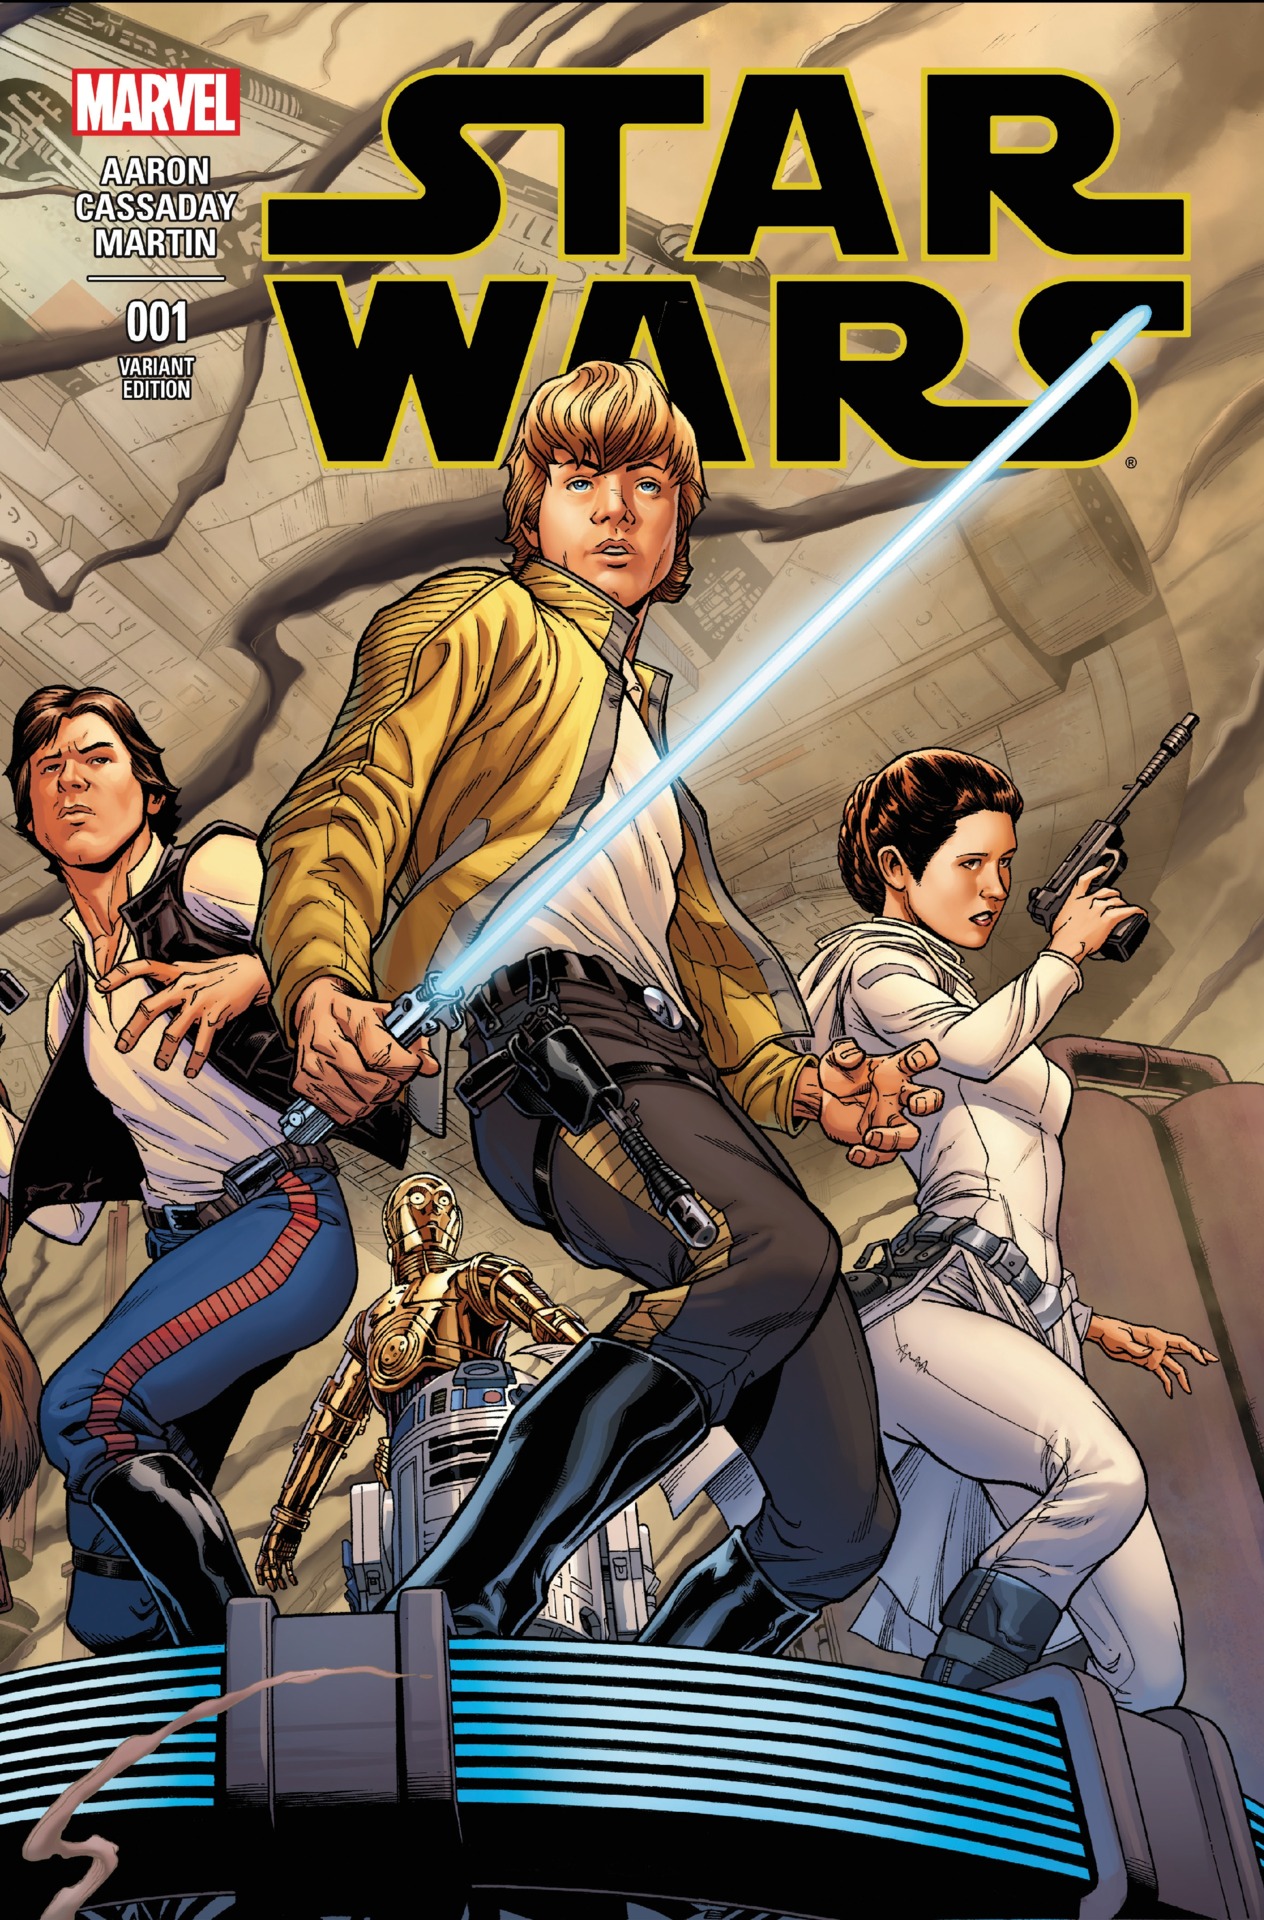 Звездные войны марвел. Комиксы Звездные войны. Звездные войны комикс том 1. Marvel Star Wars Cover Art. Комикс Star Wars Marvel 001 variant Edition.